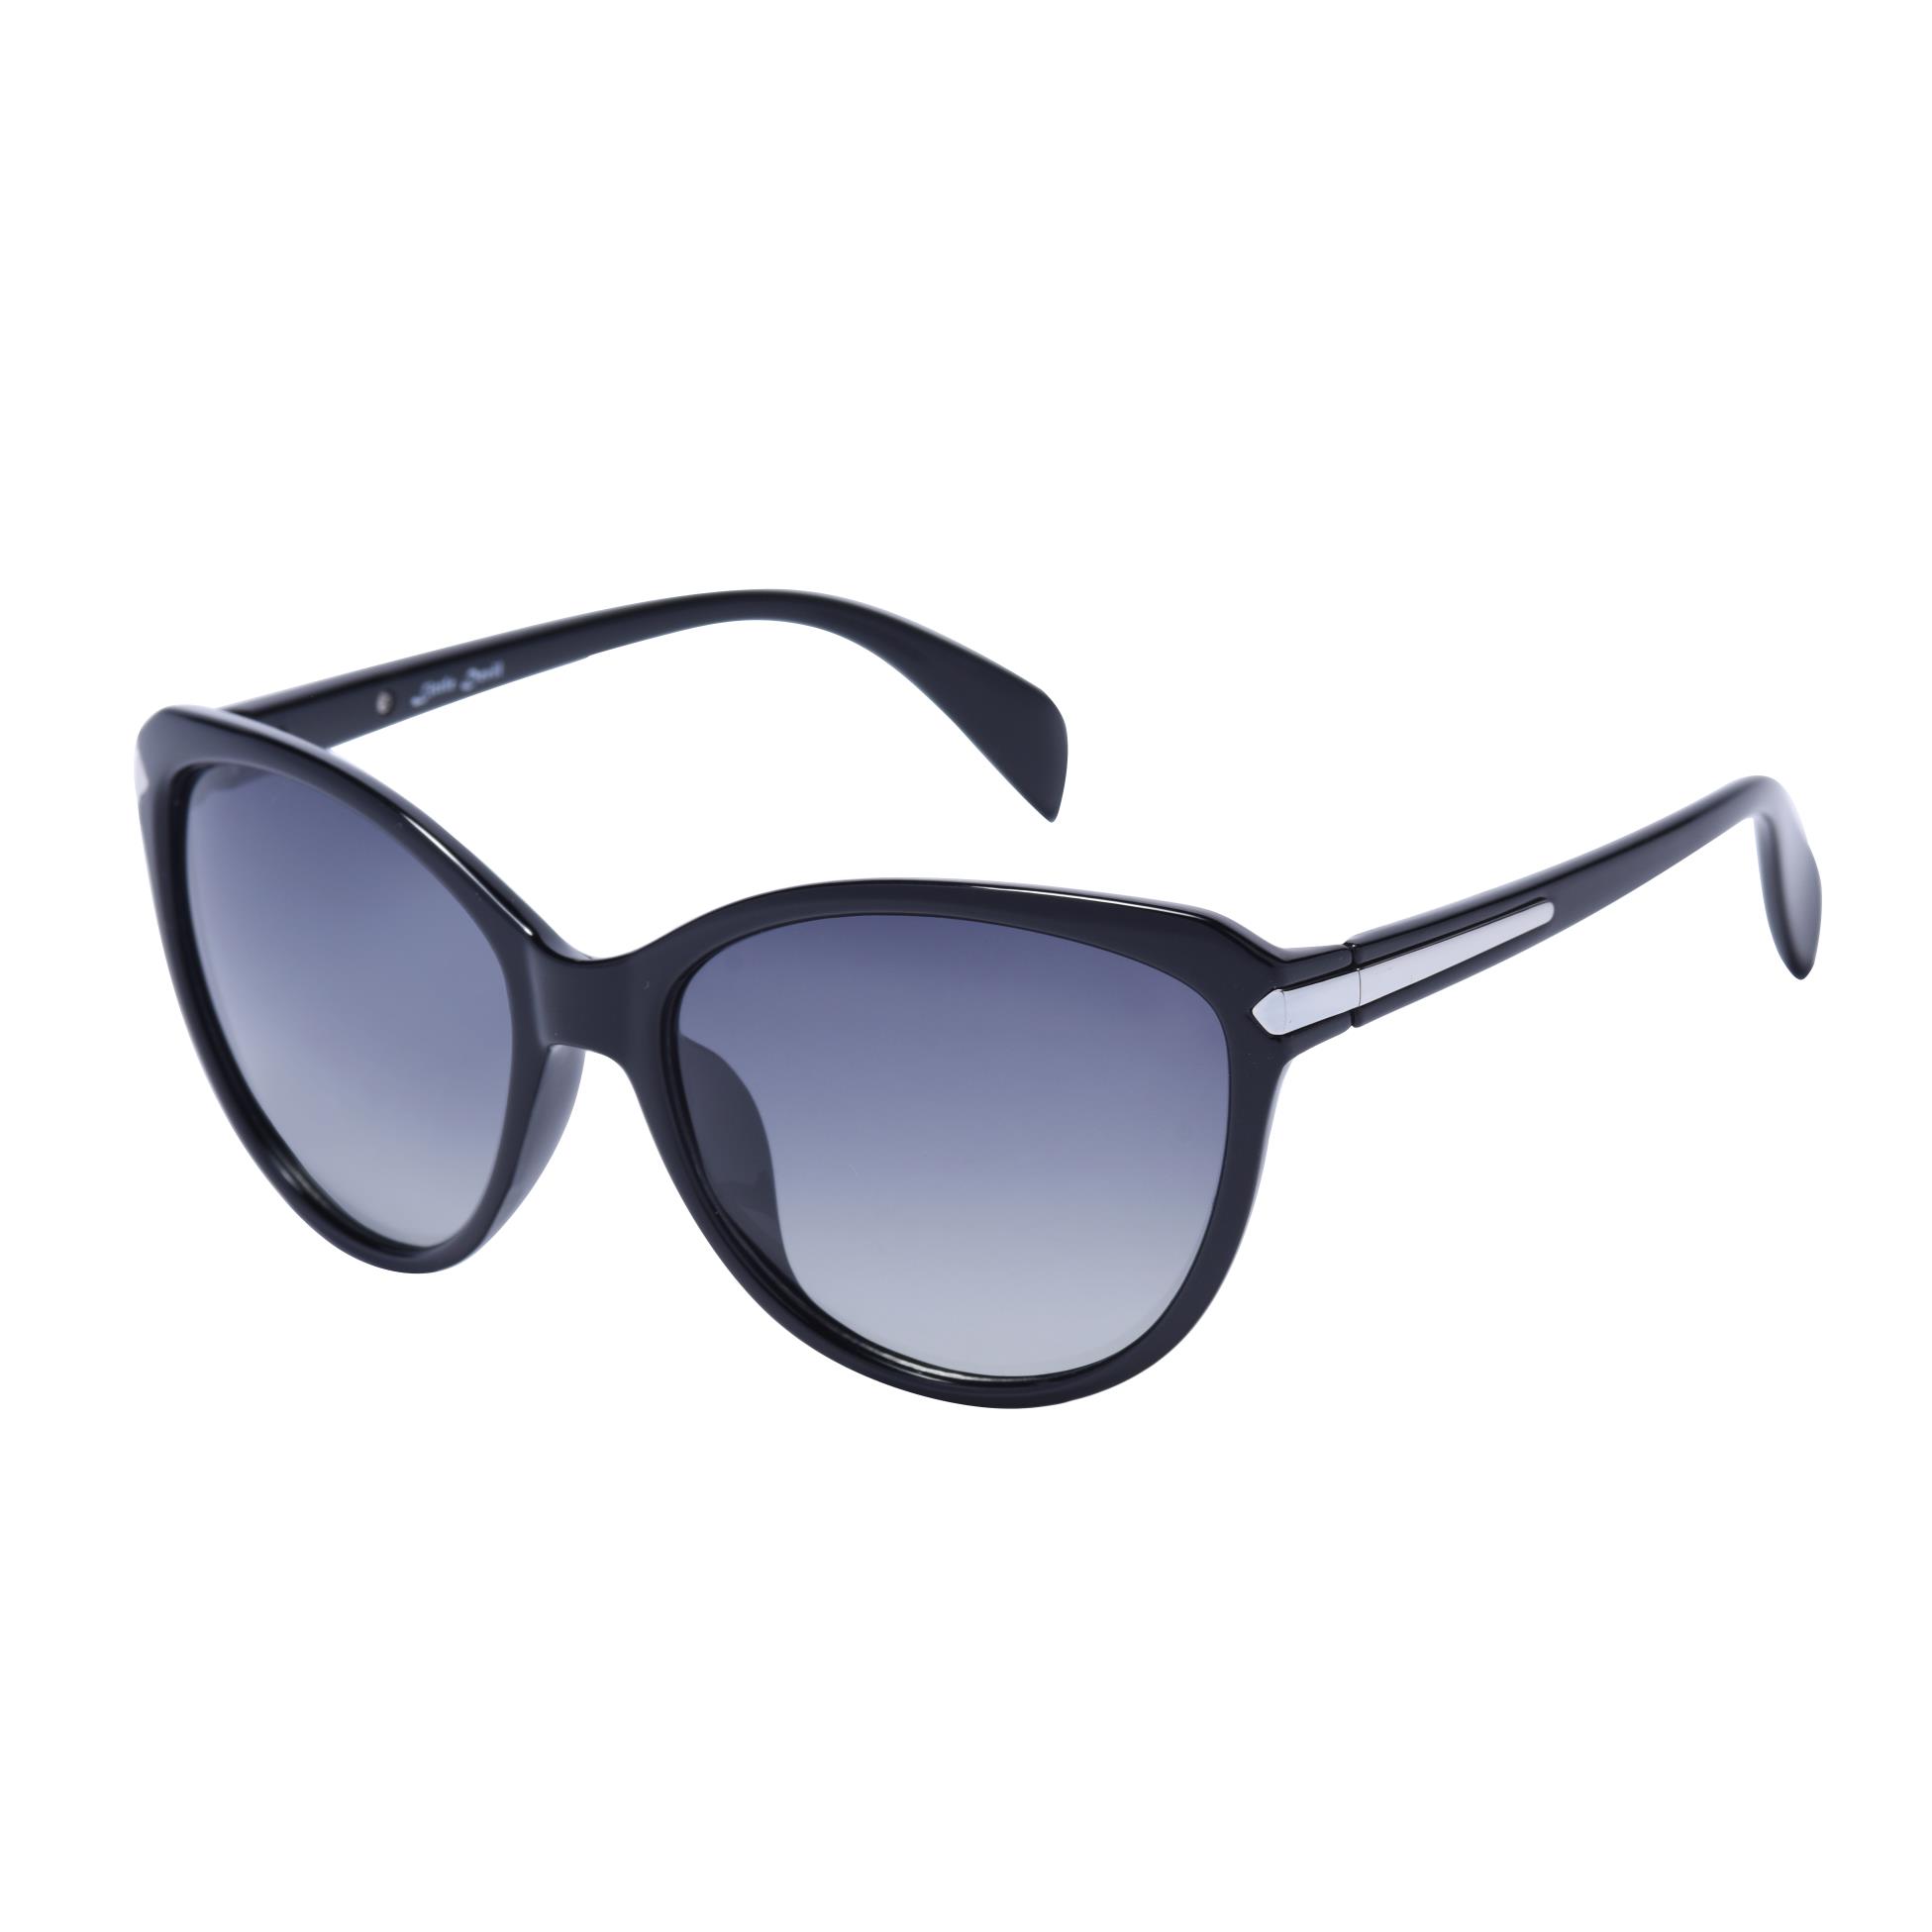 Gafas de sol cateye de moda para mujer 5505